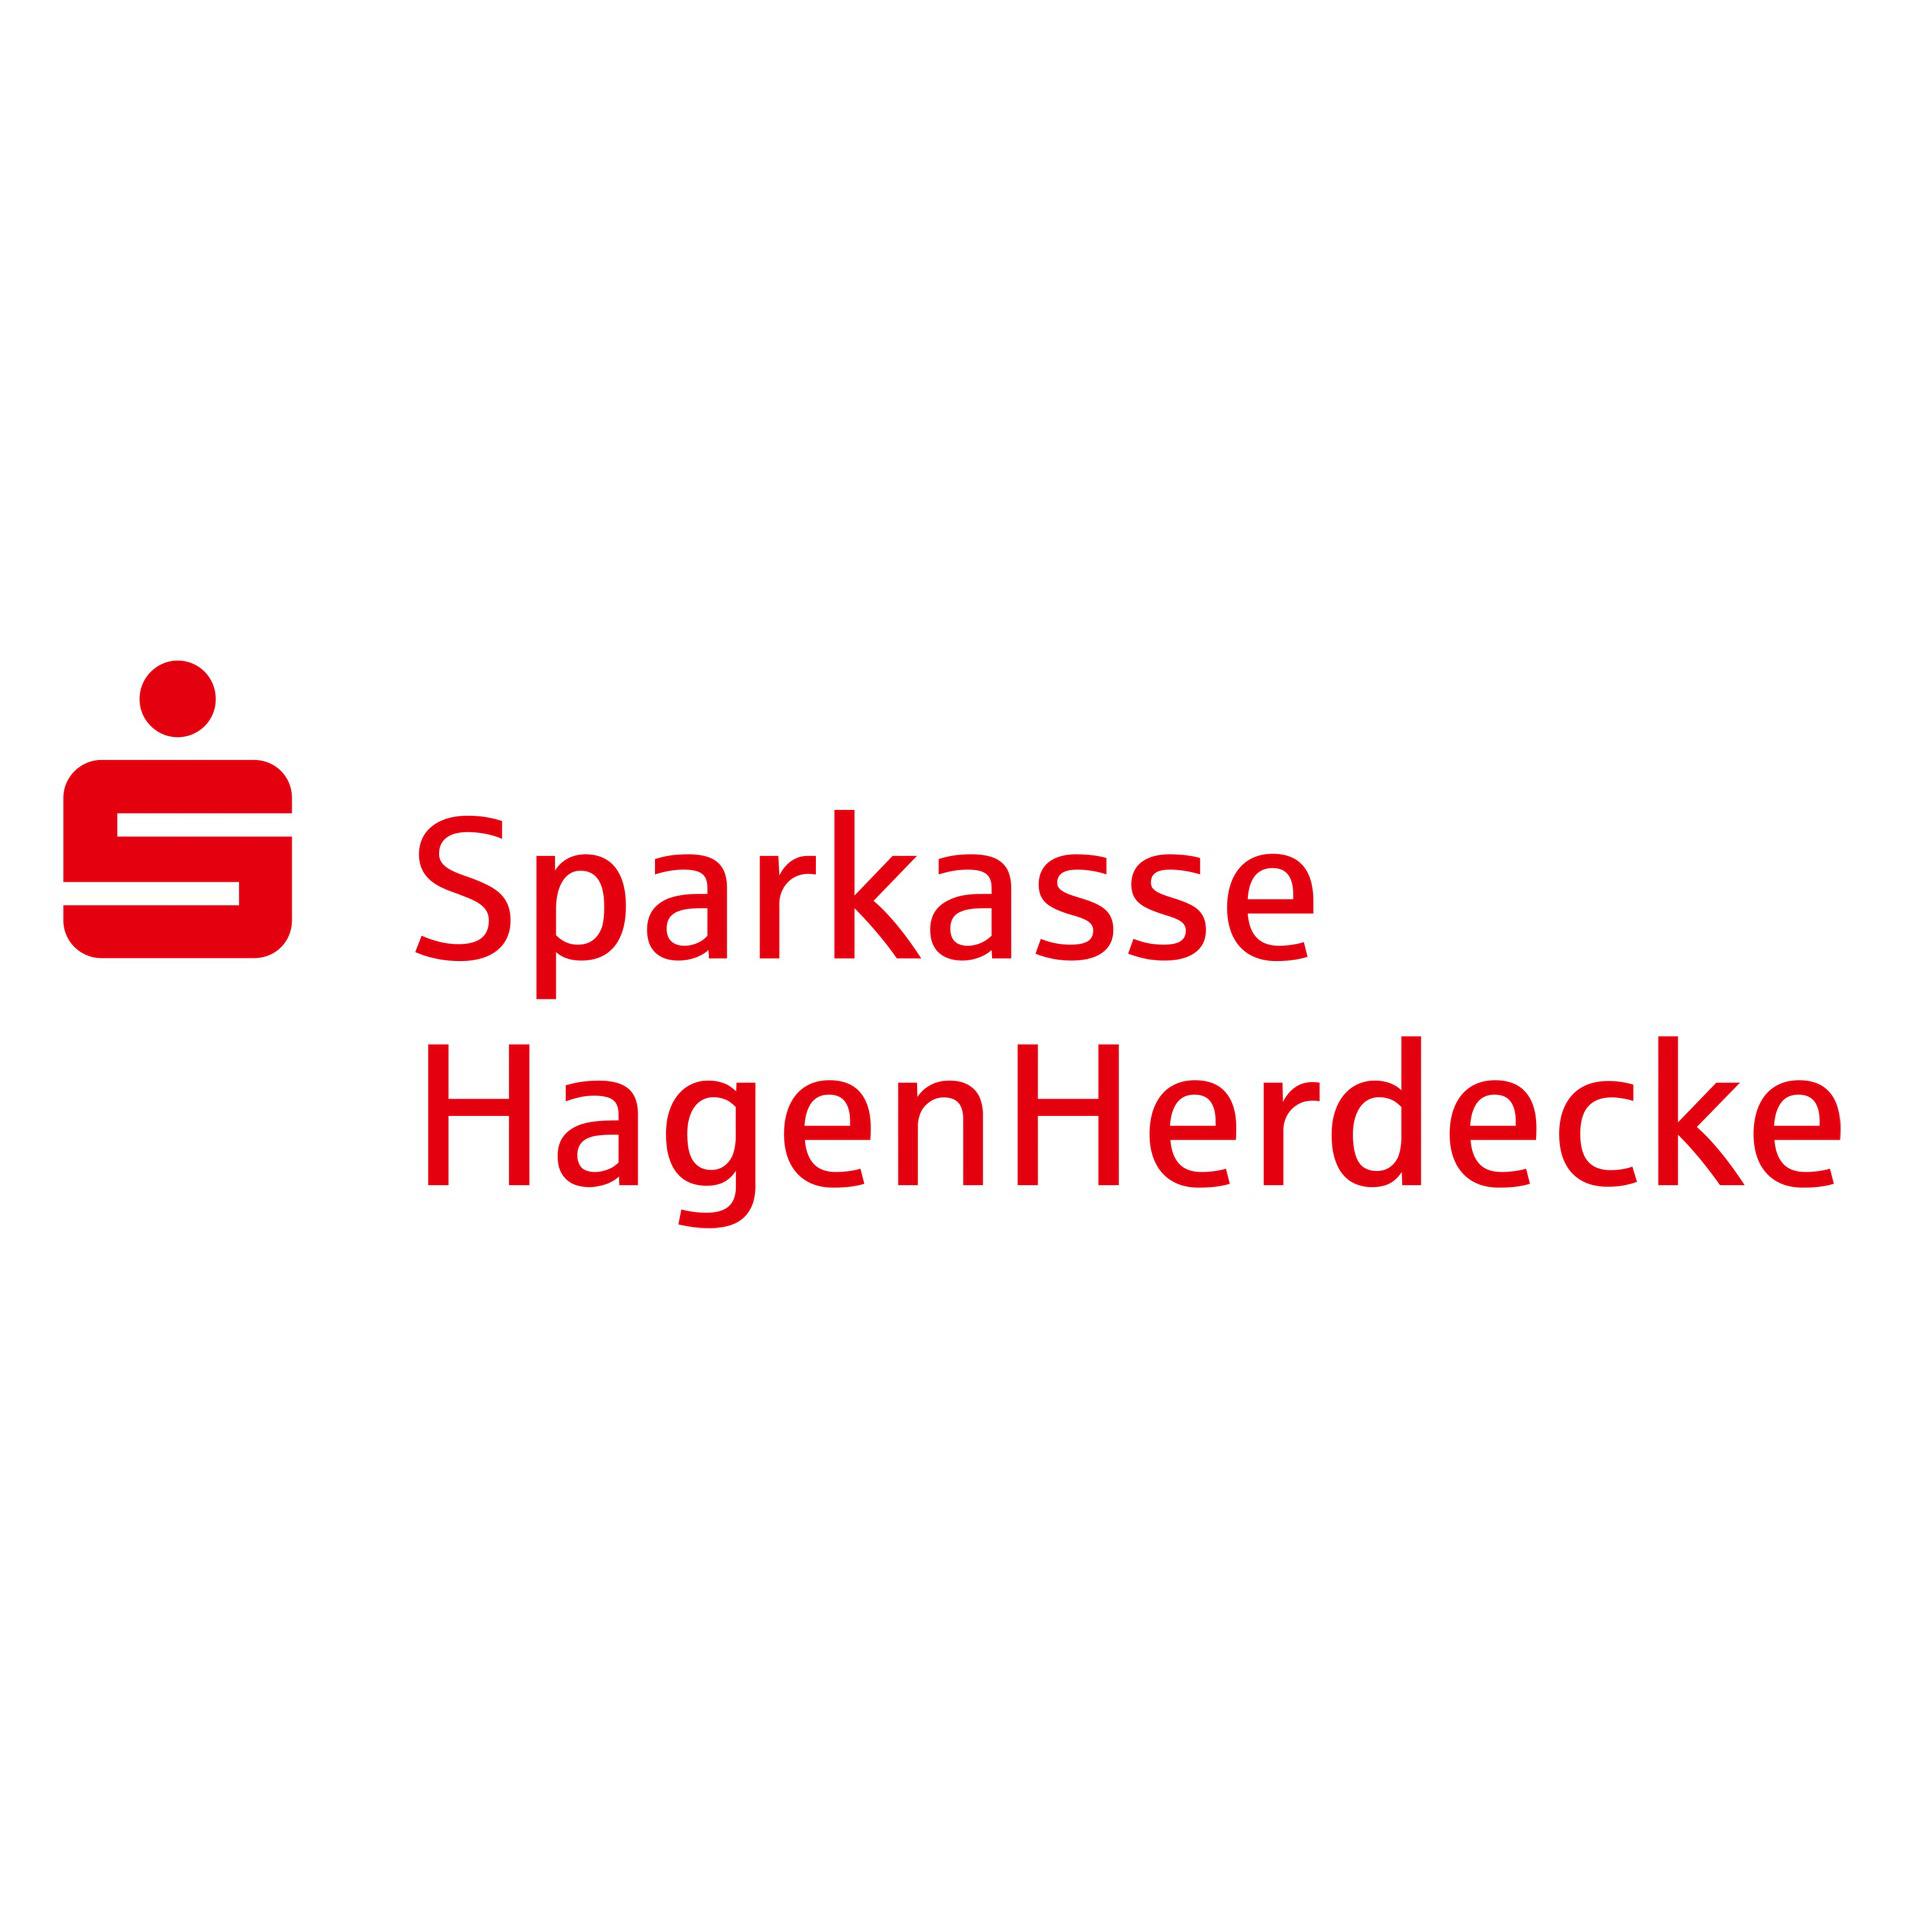 Sparkasse HagenHerdecke in Hagen in Westfalen - Logo